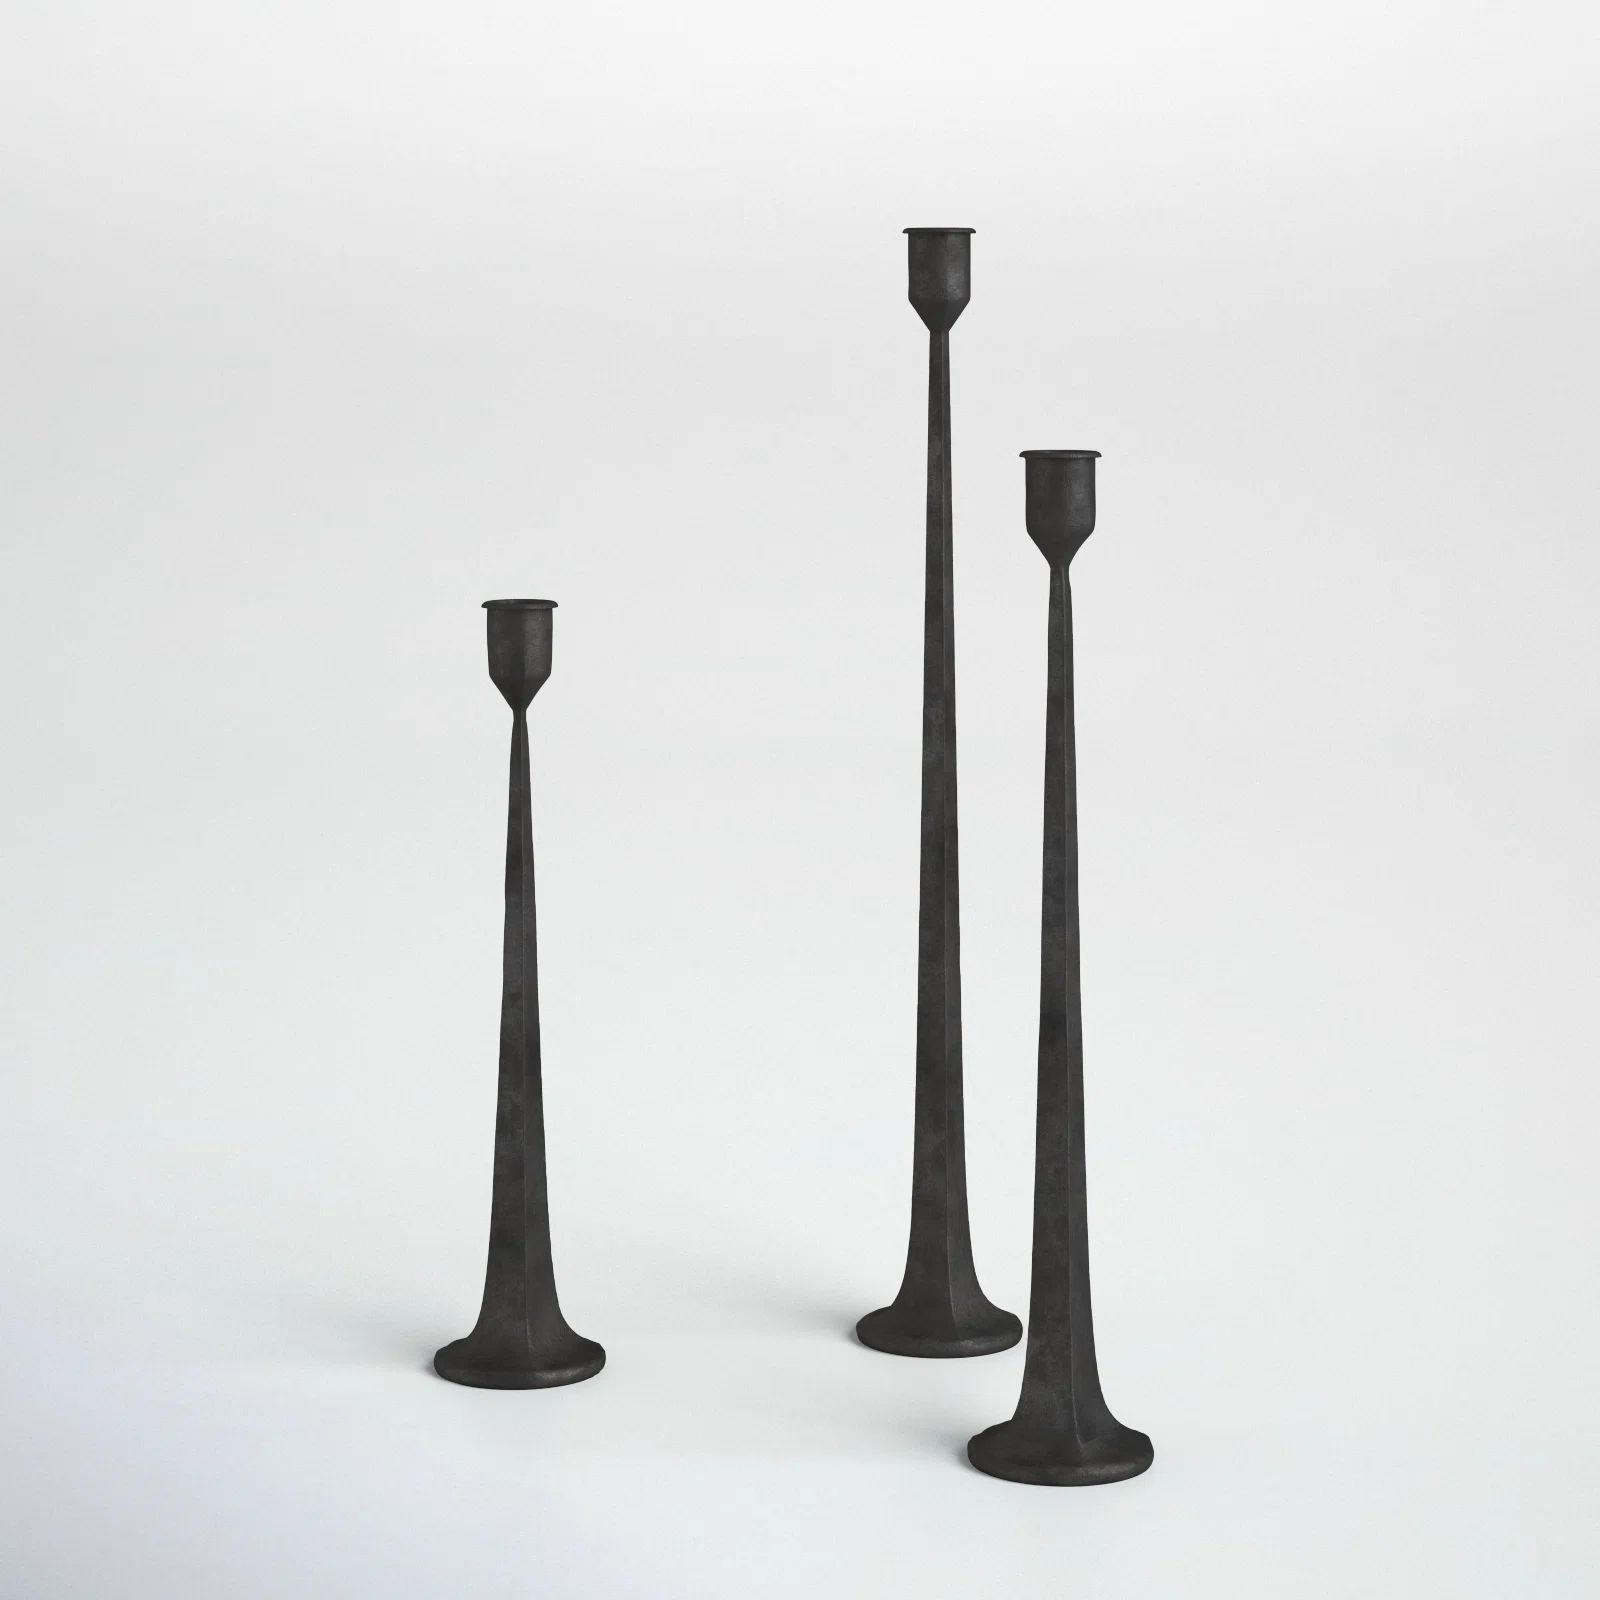 Salah 3 Piece Iron Tabletop Candlestick Set | Wayfair North America